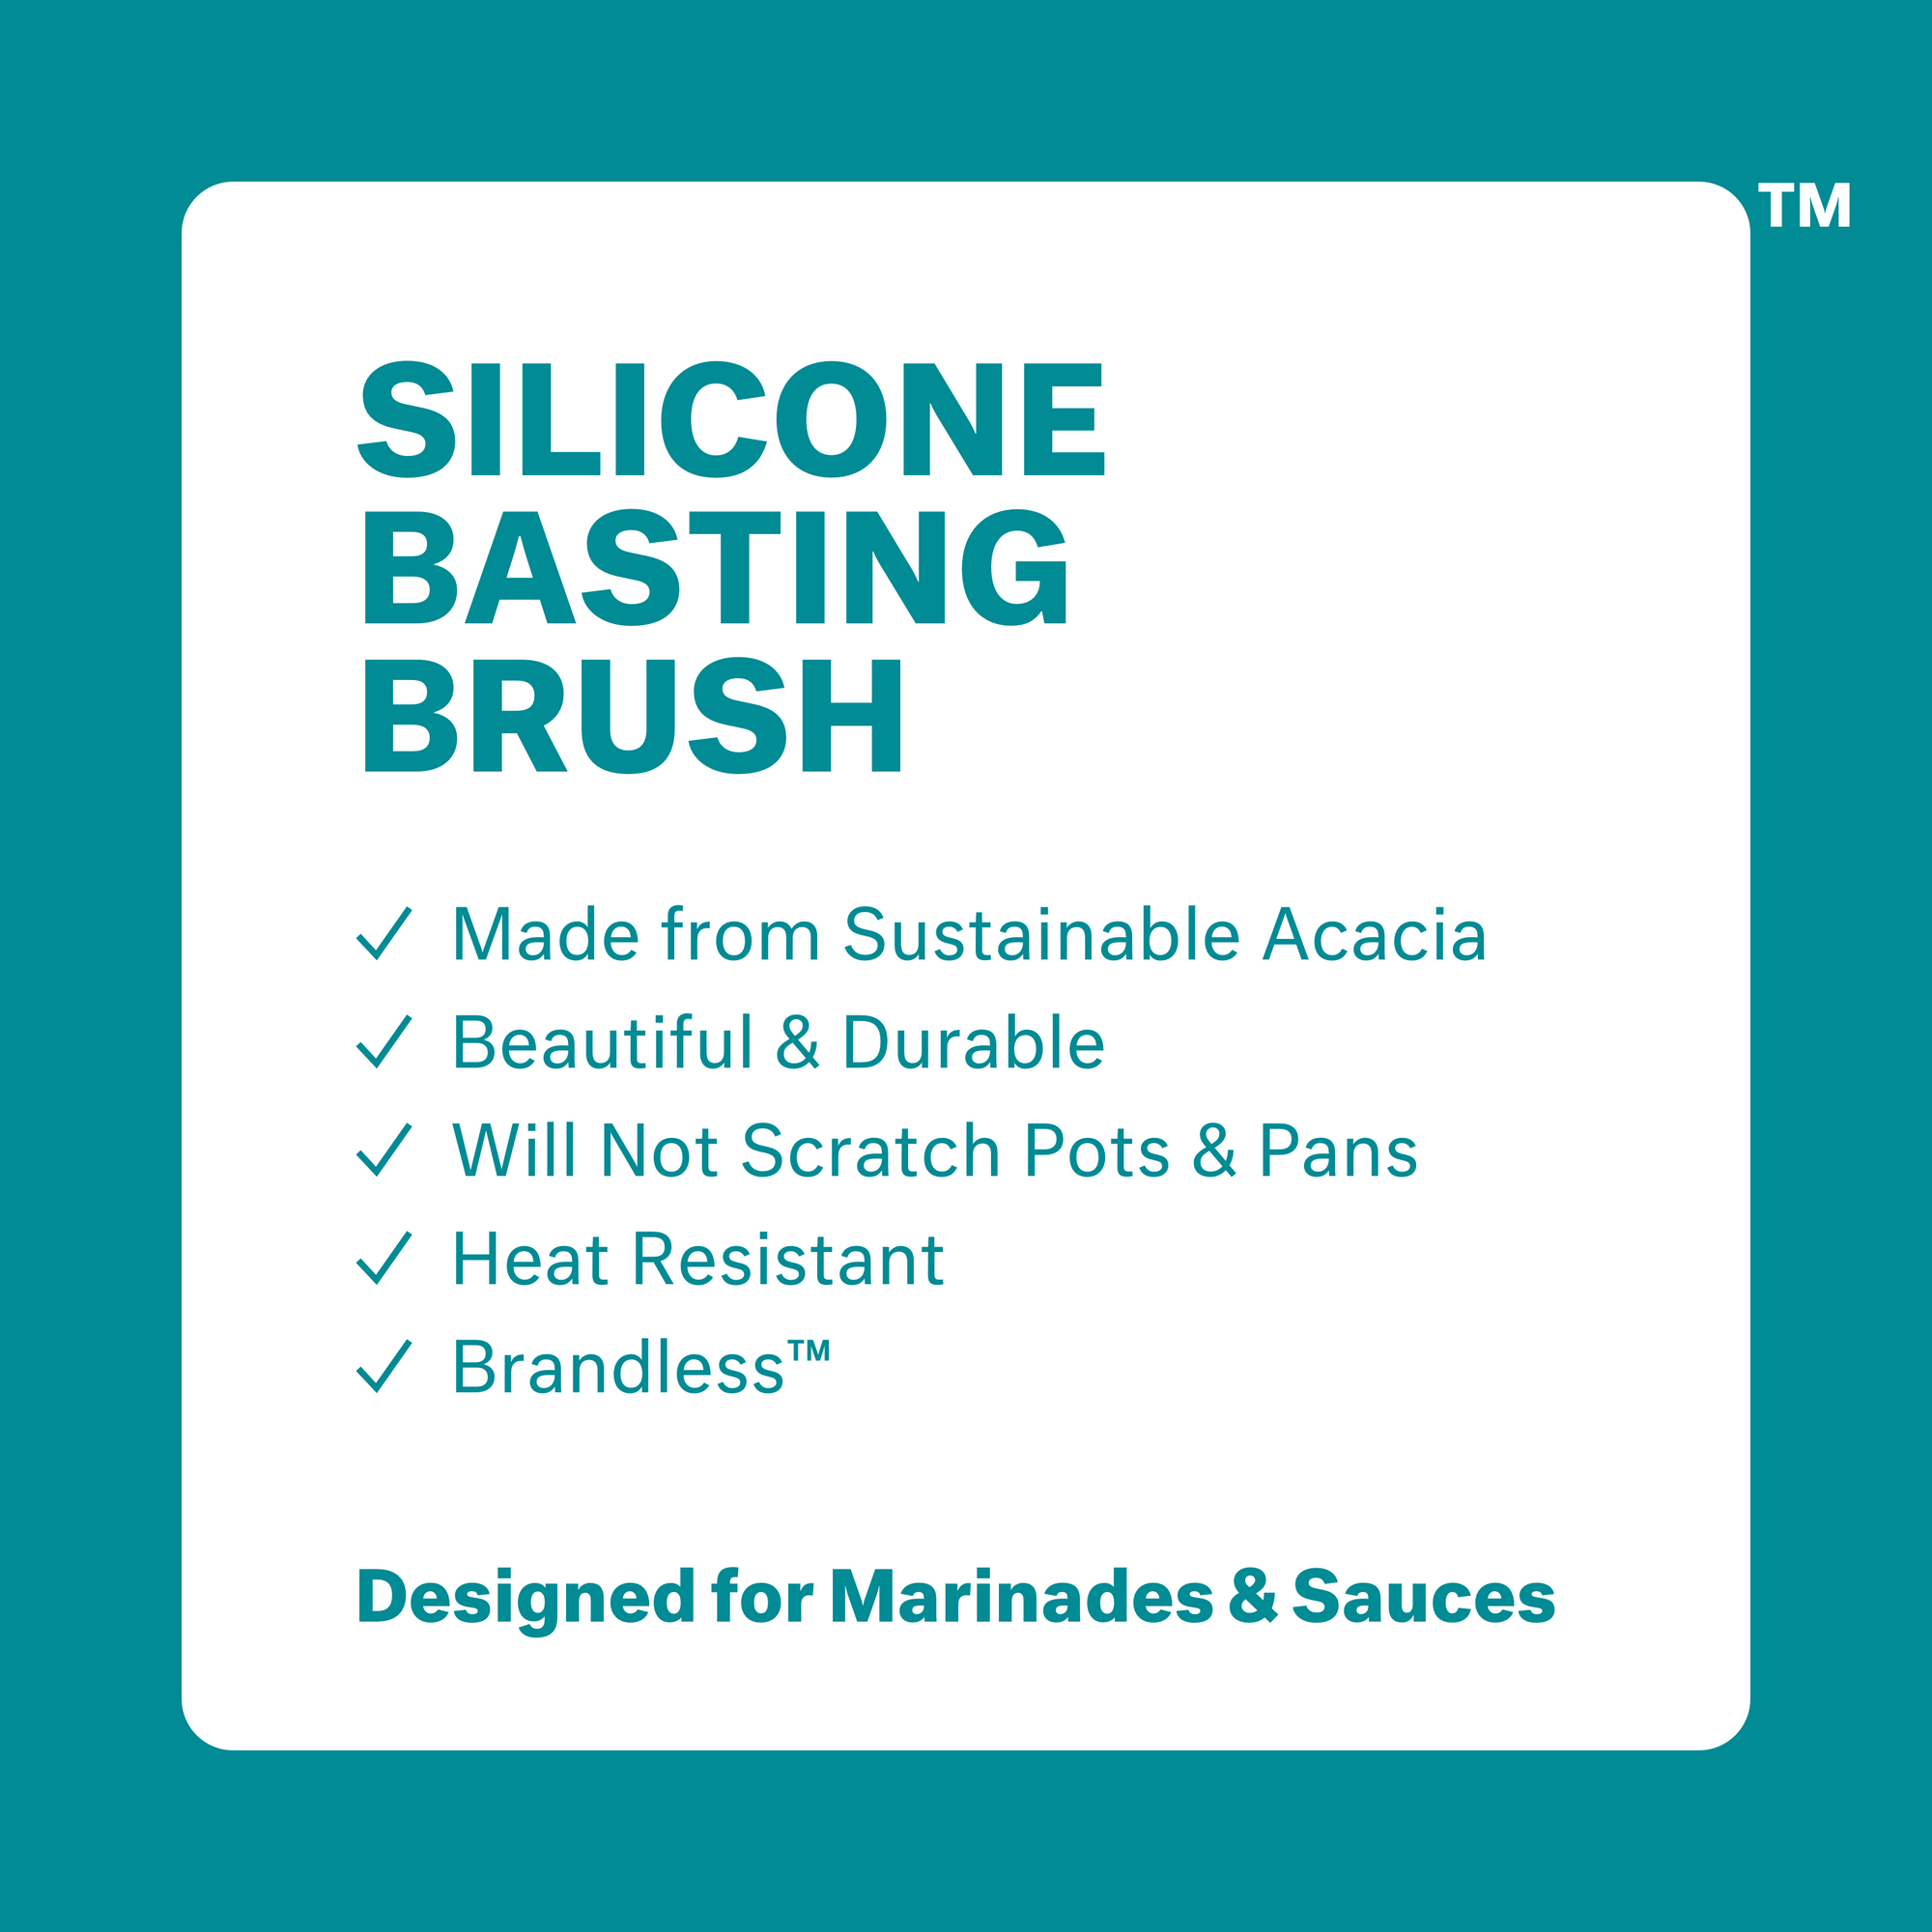 Product photo, silicone basting brush.